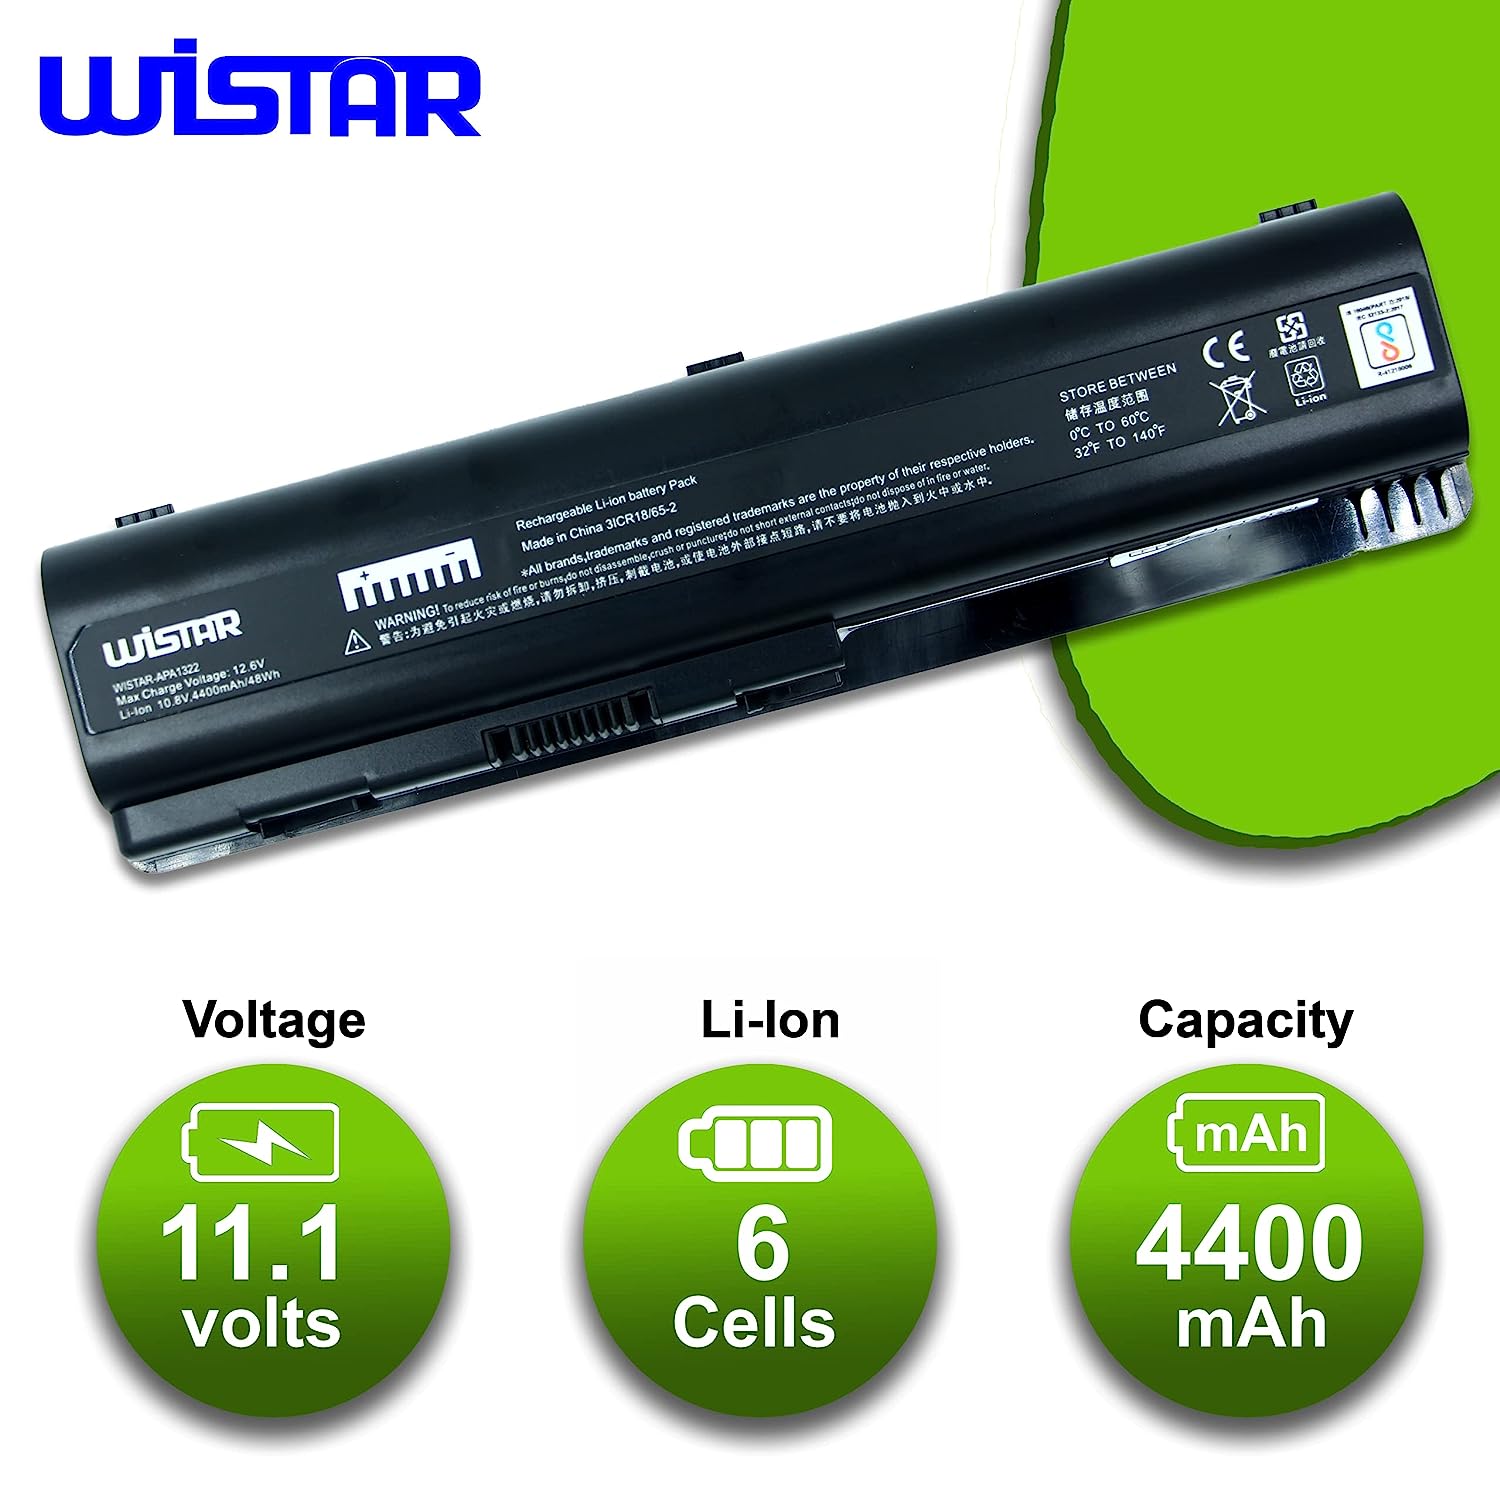 WISTAR Laptop Battery for HP Pavilion DV4/DV5 Compaq CQ40, CQ45, CQ50, CQ60, CQ 61, CQ70 Series Laptop Battery